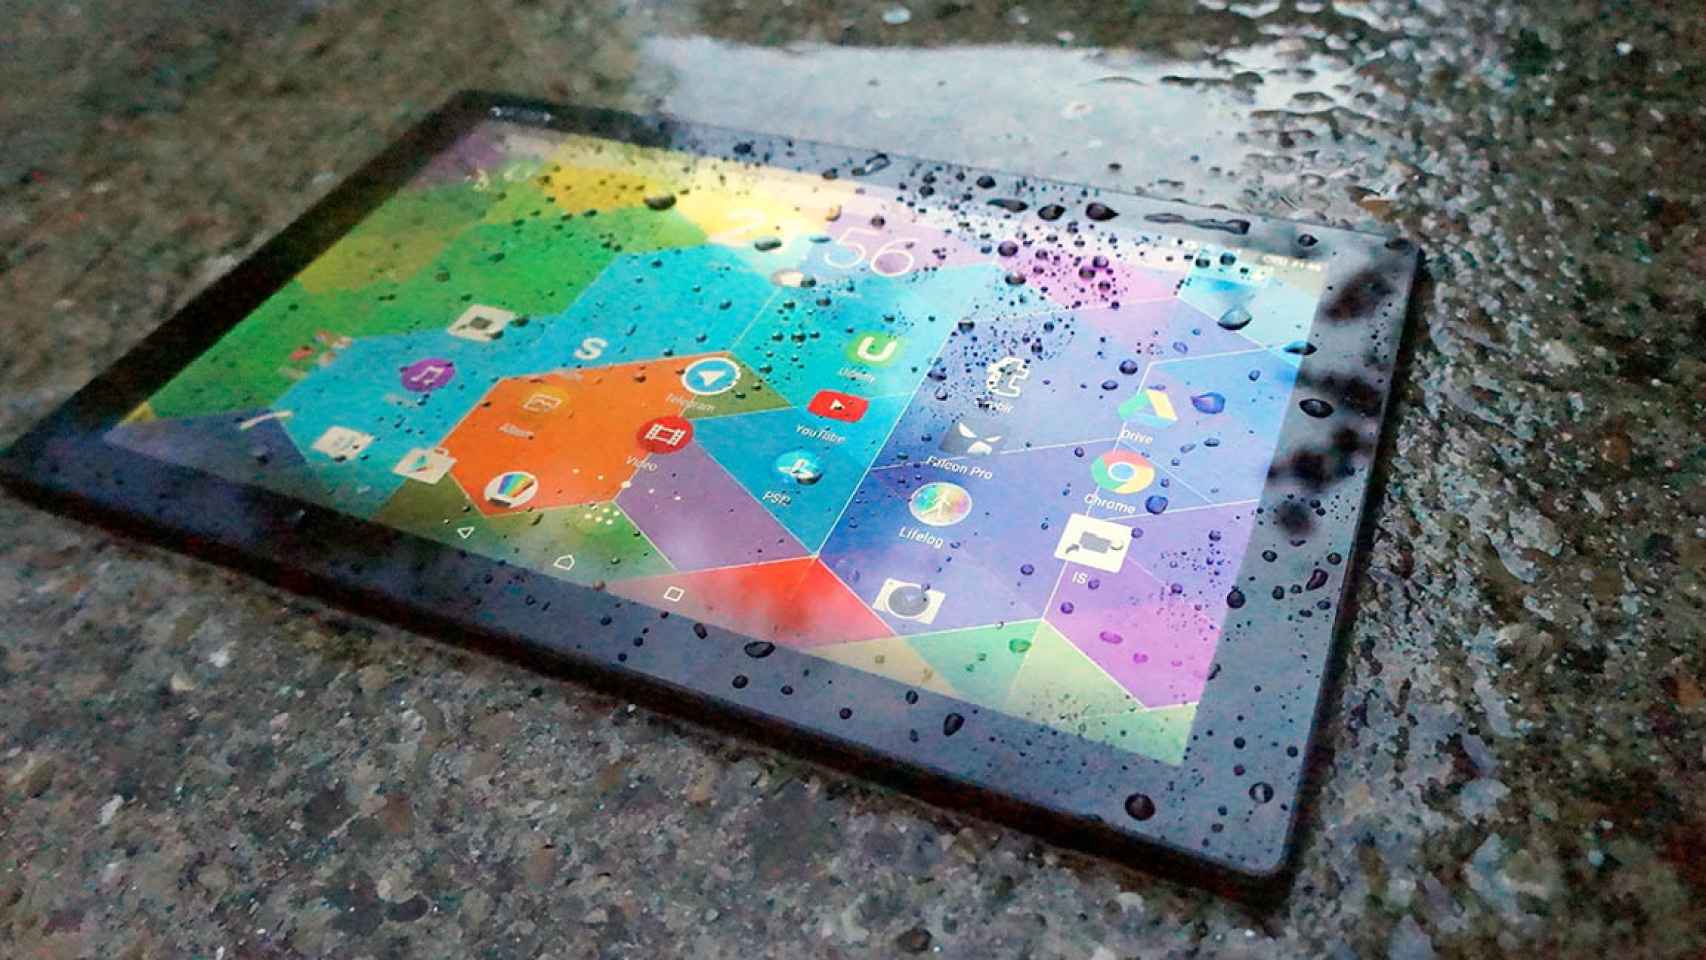 Sony Xperia Z4 tablet: Análisis y experiencia de uso